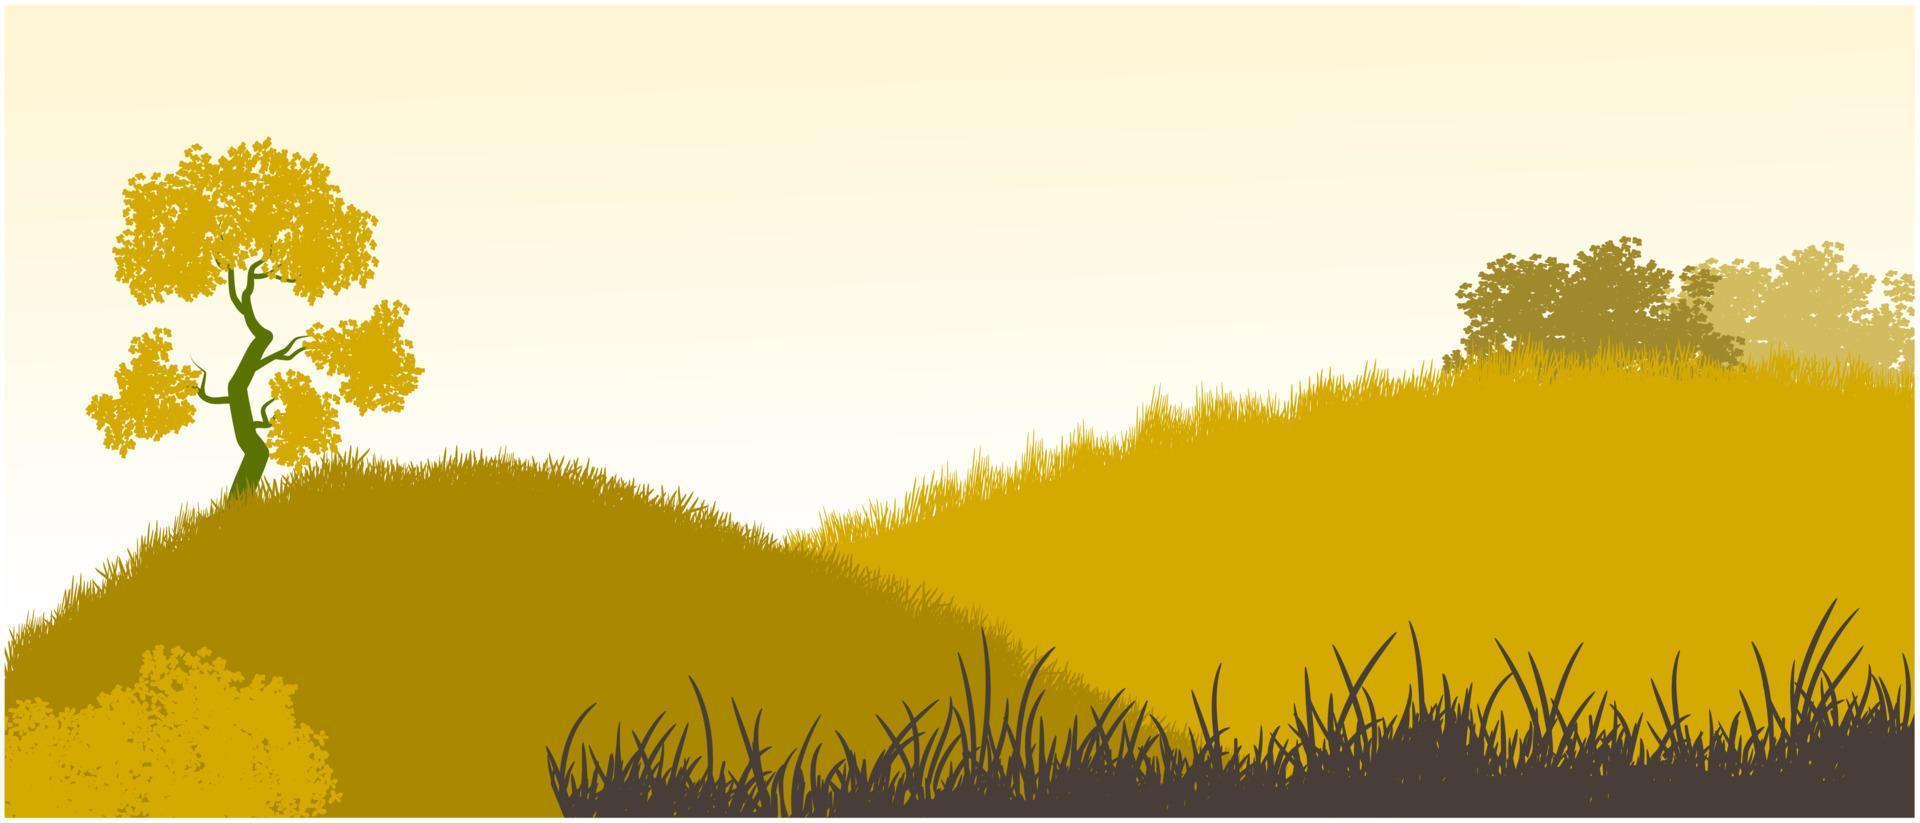 silueta de colinas marrones secas, vector de fondo de hierba muerta